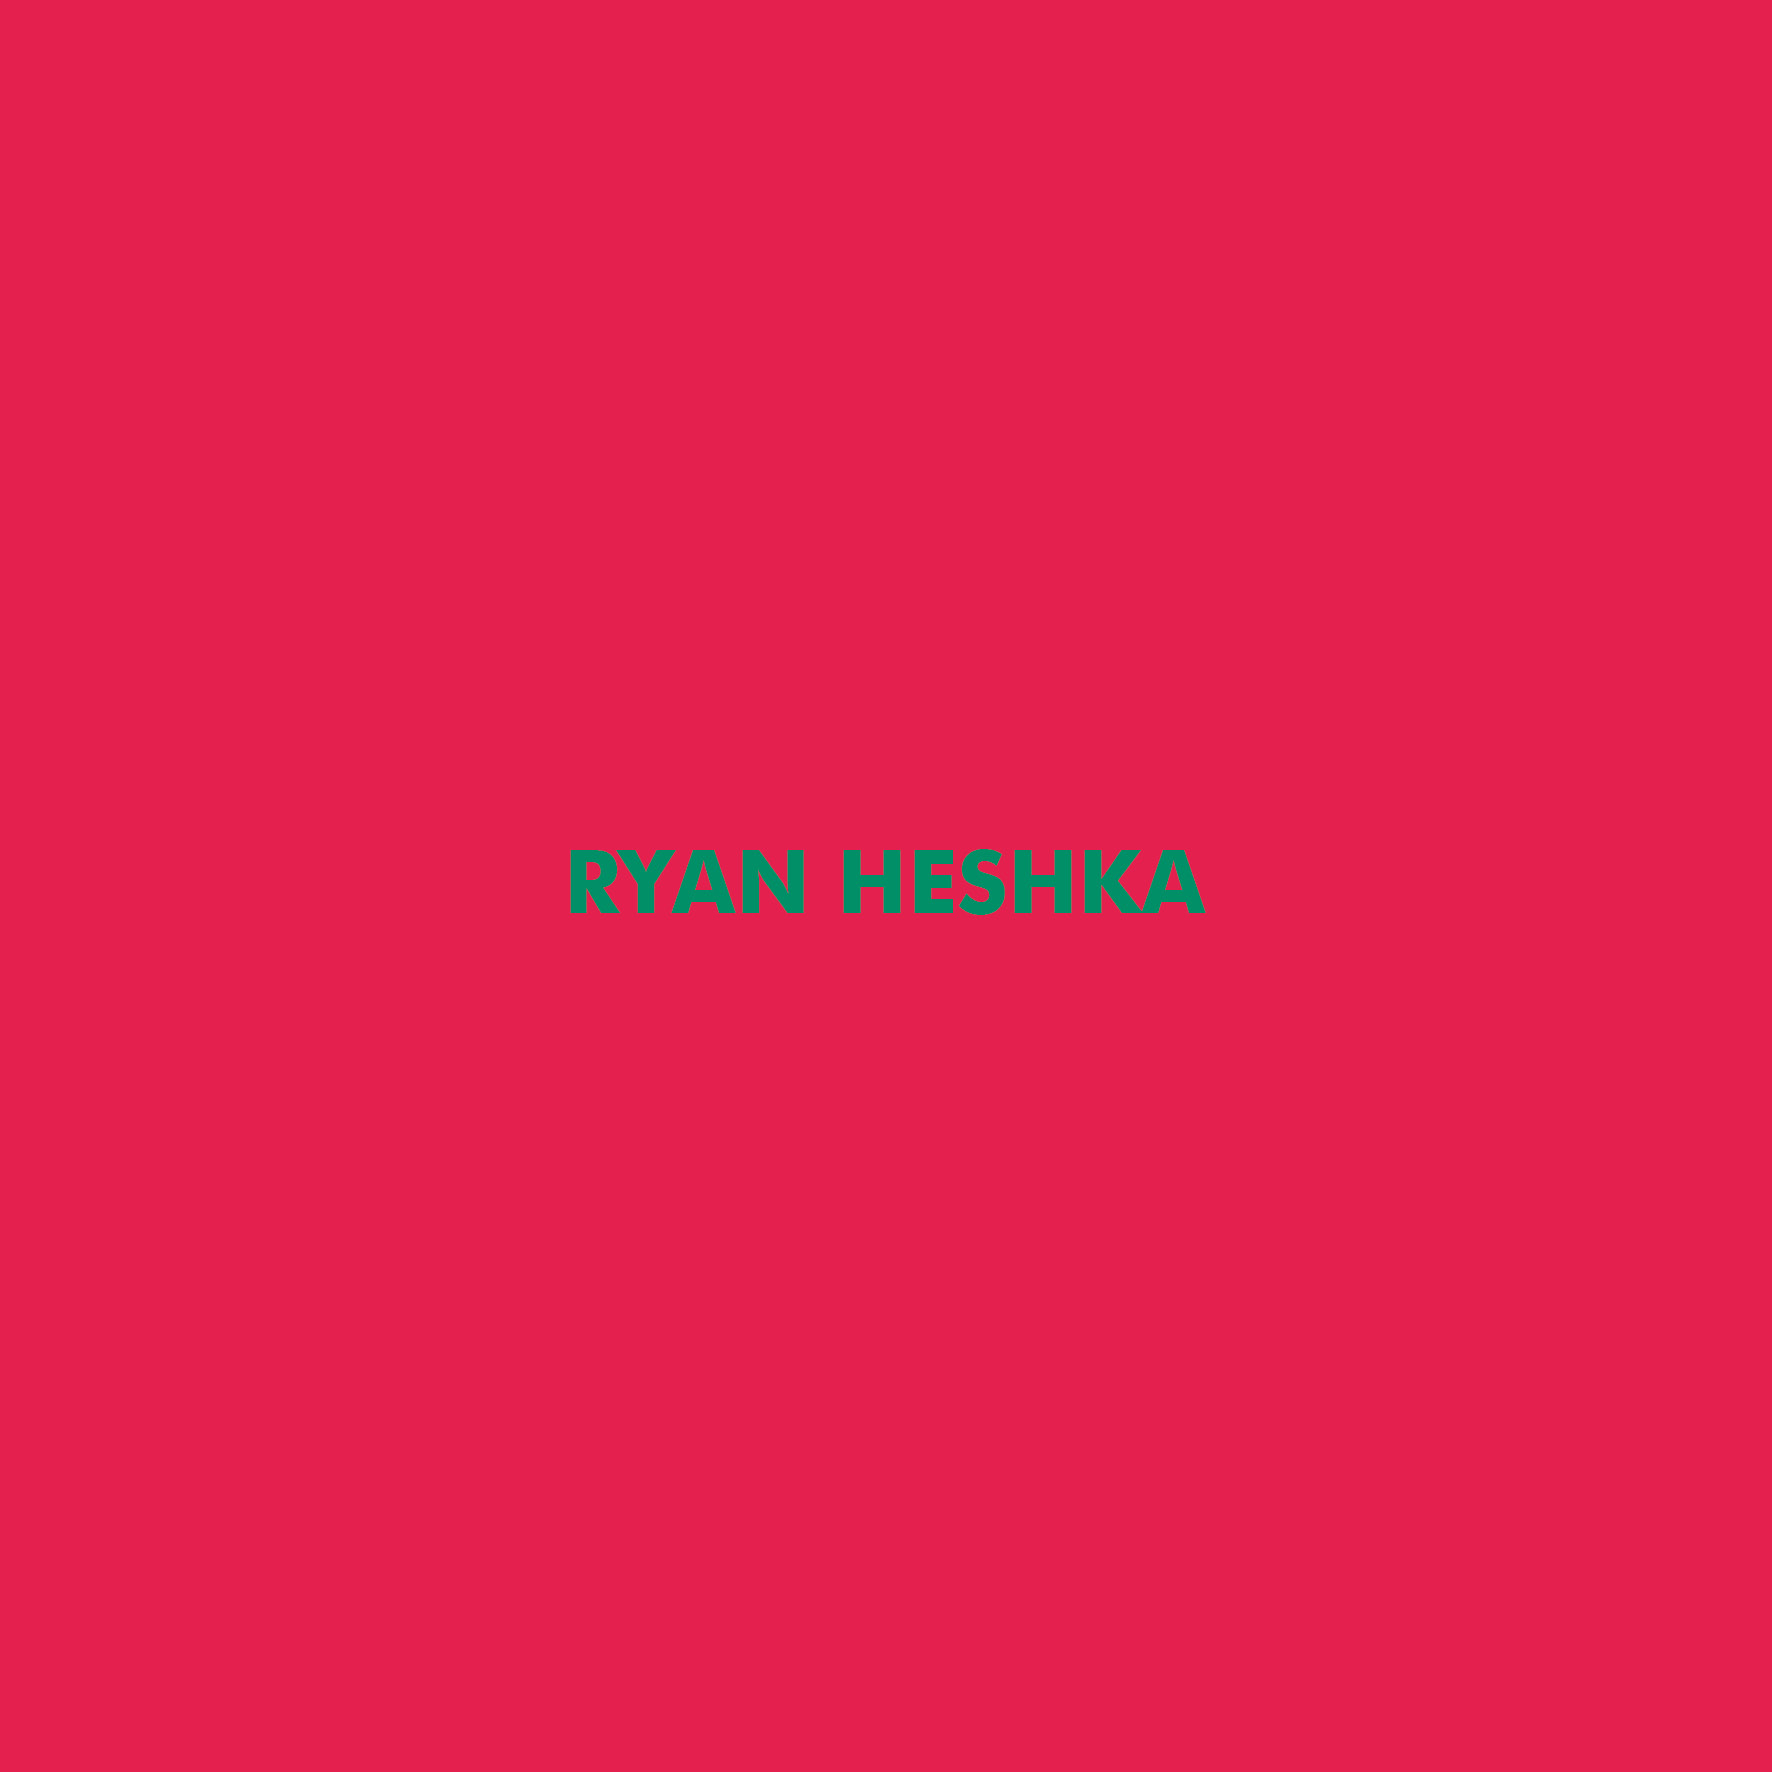 Heshka – Romance of Canada